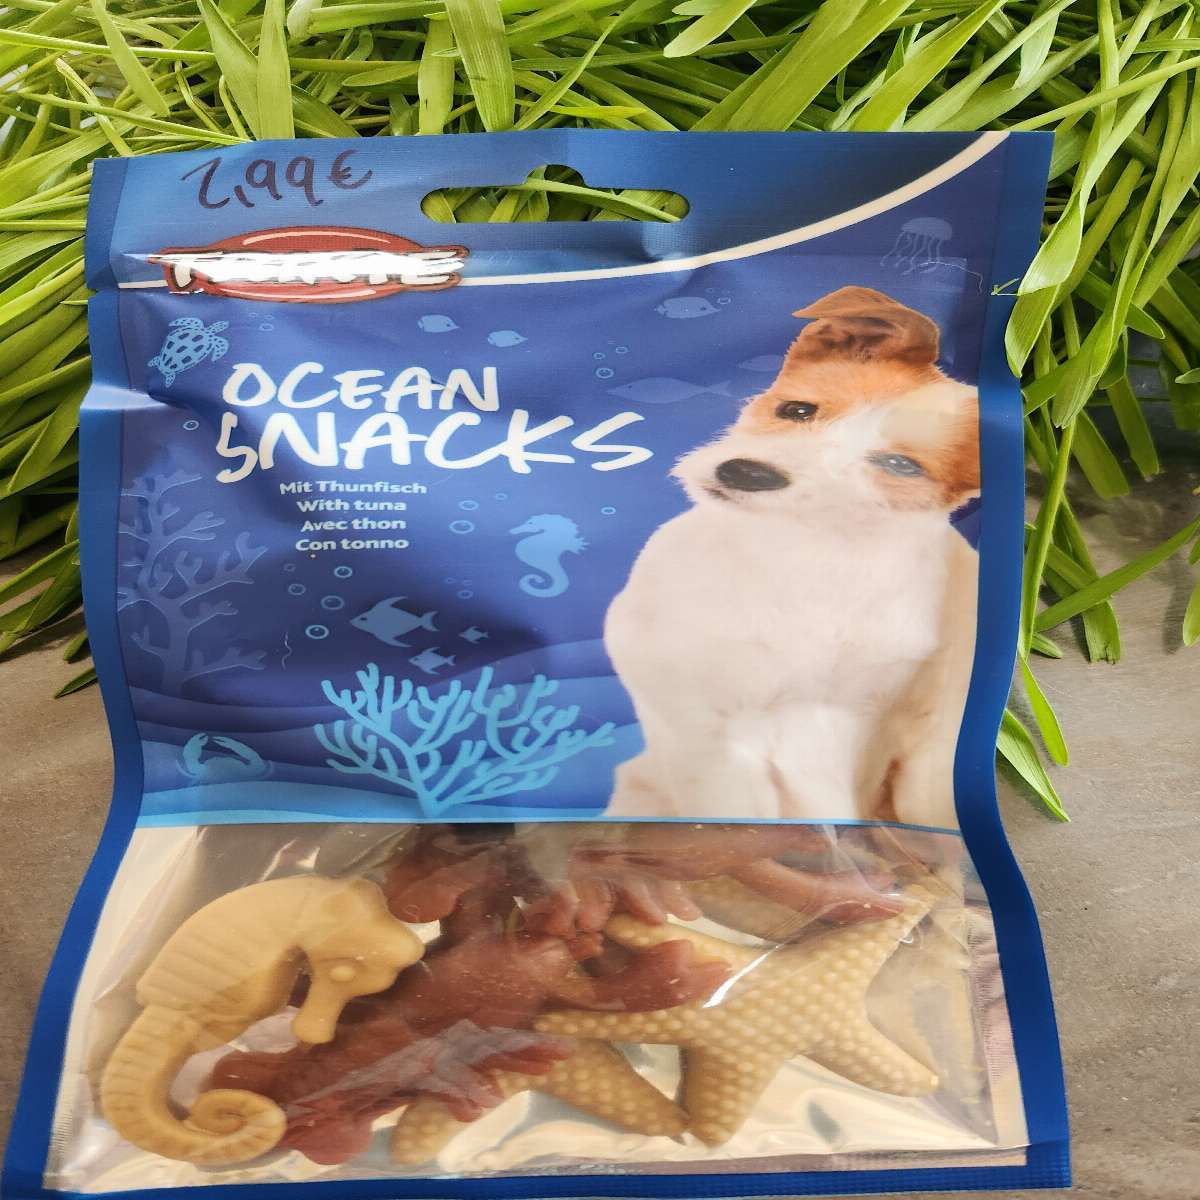 Ocean snacks